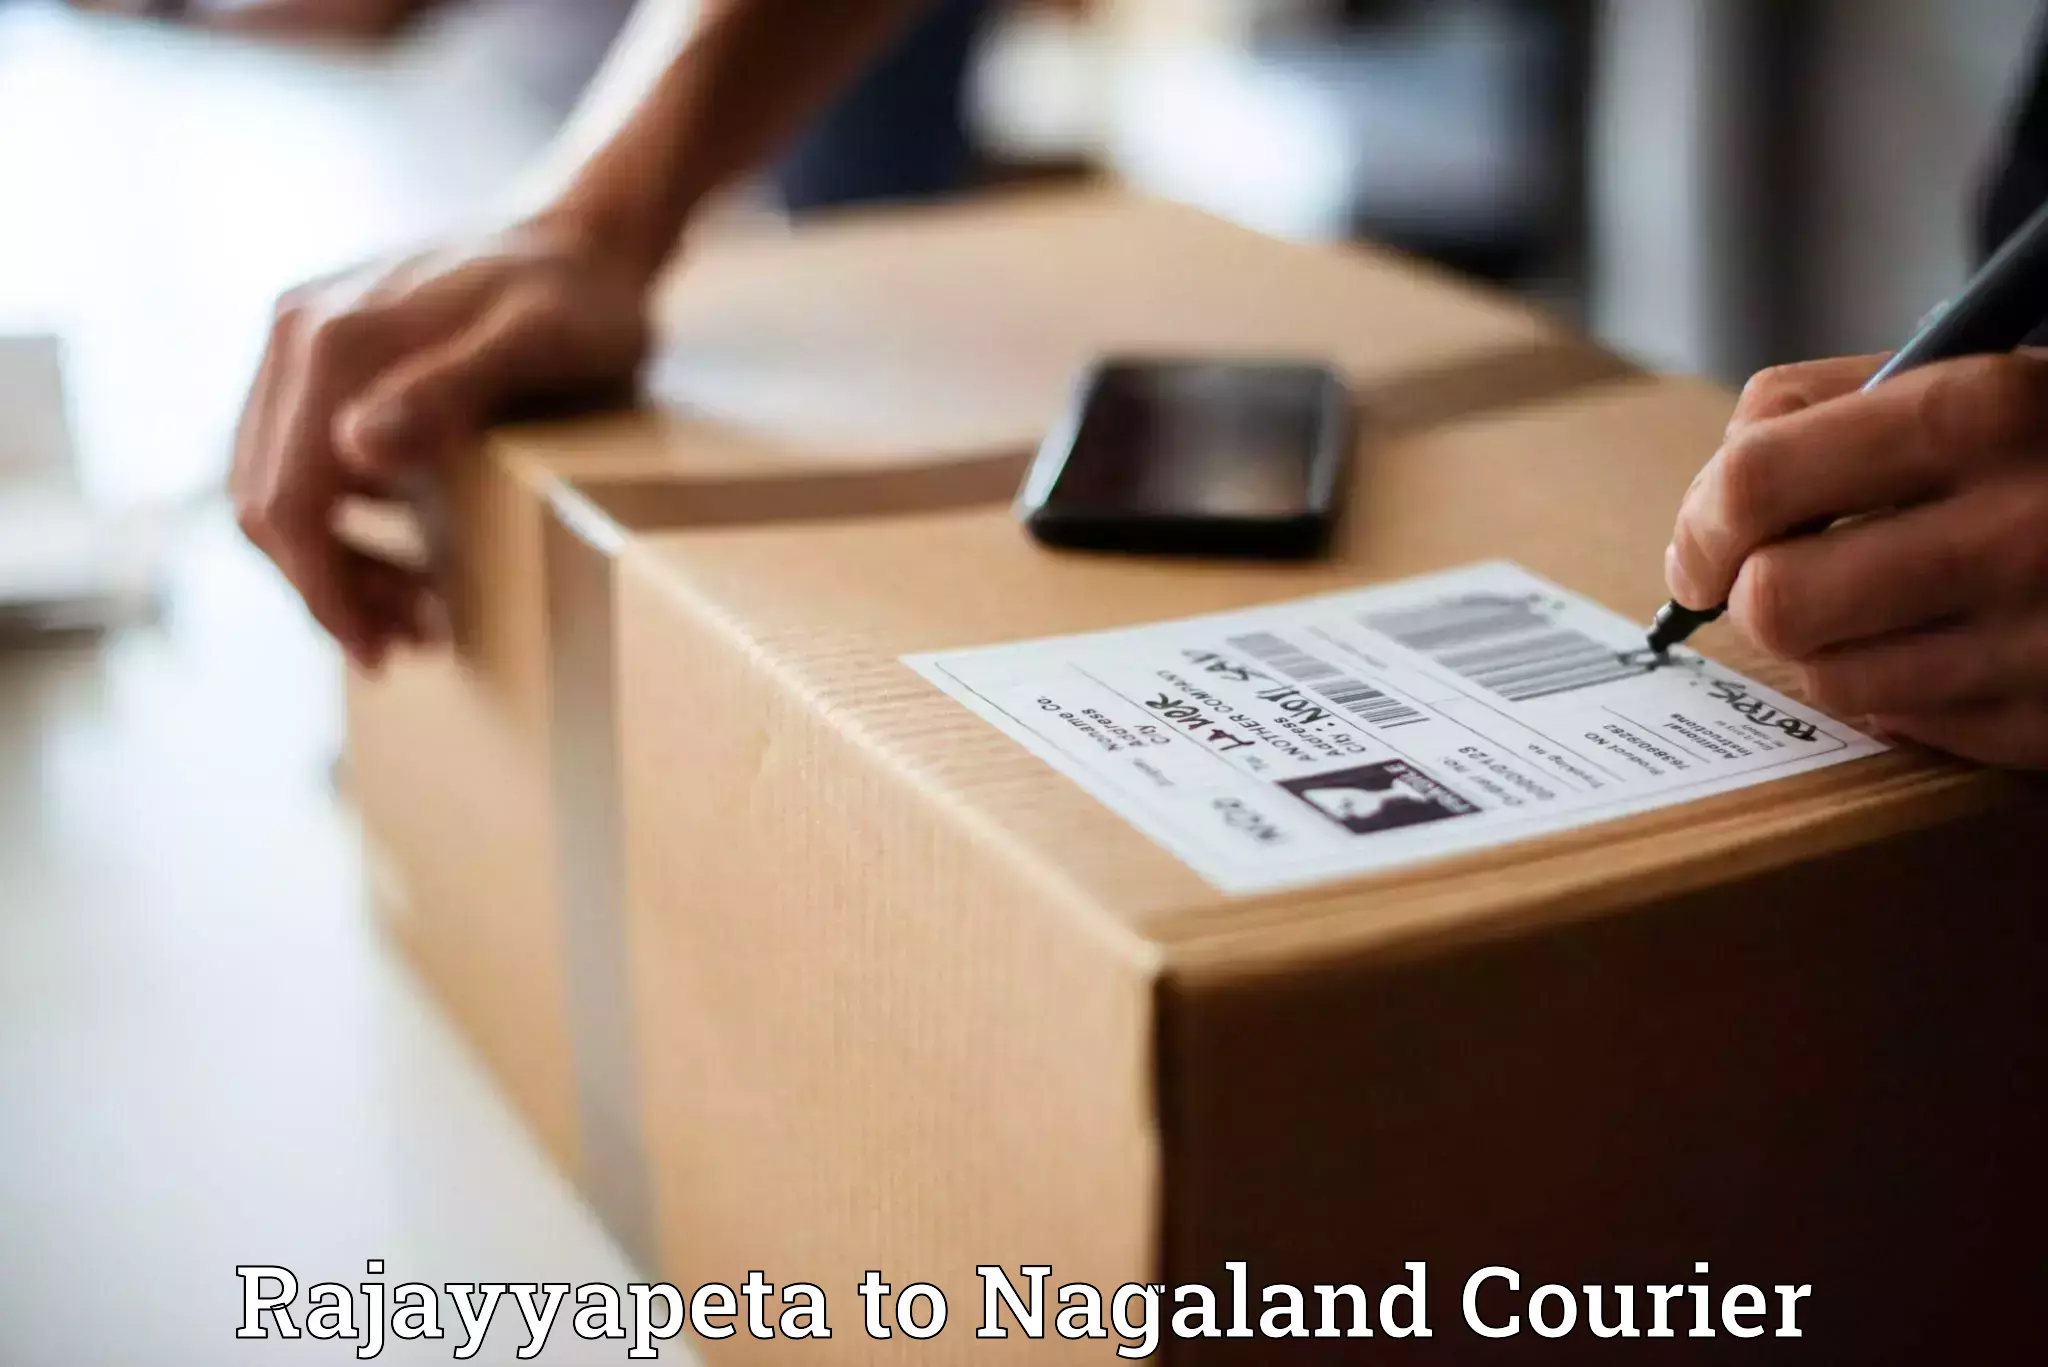 Efficient parcel tracking Rajayyapeta to Nagaland